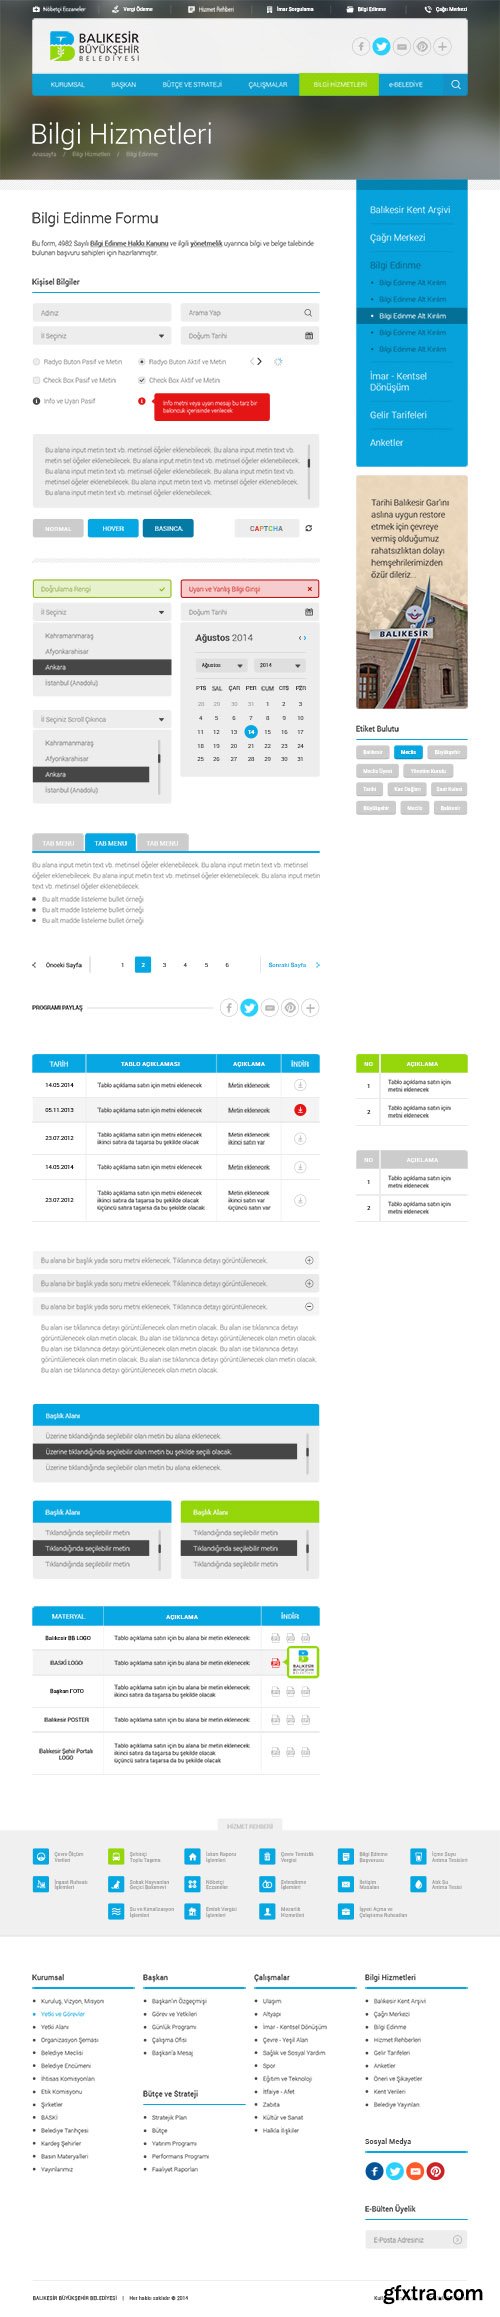 PSD Web Design - Corporate UI Kit 2015